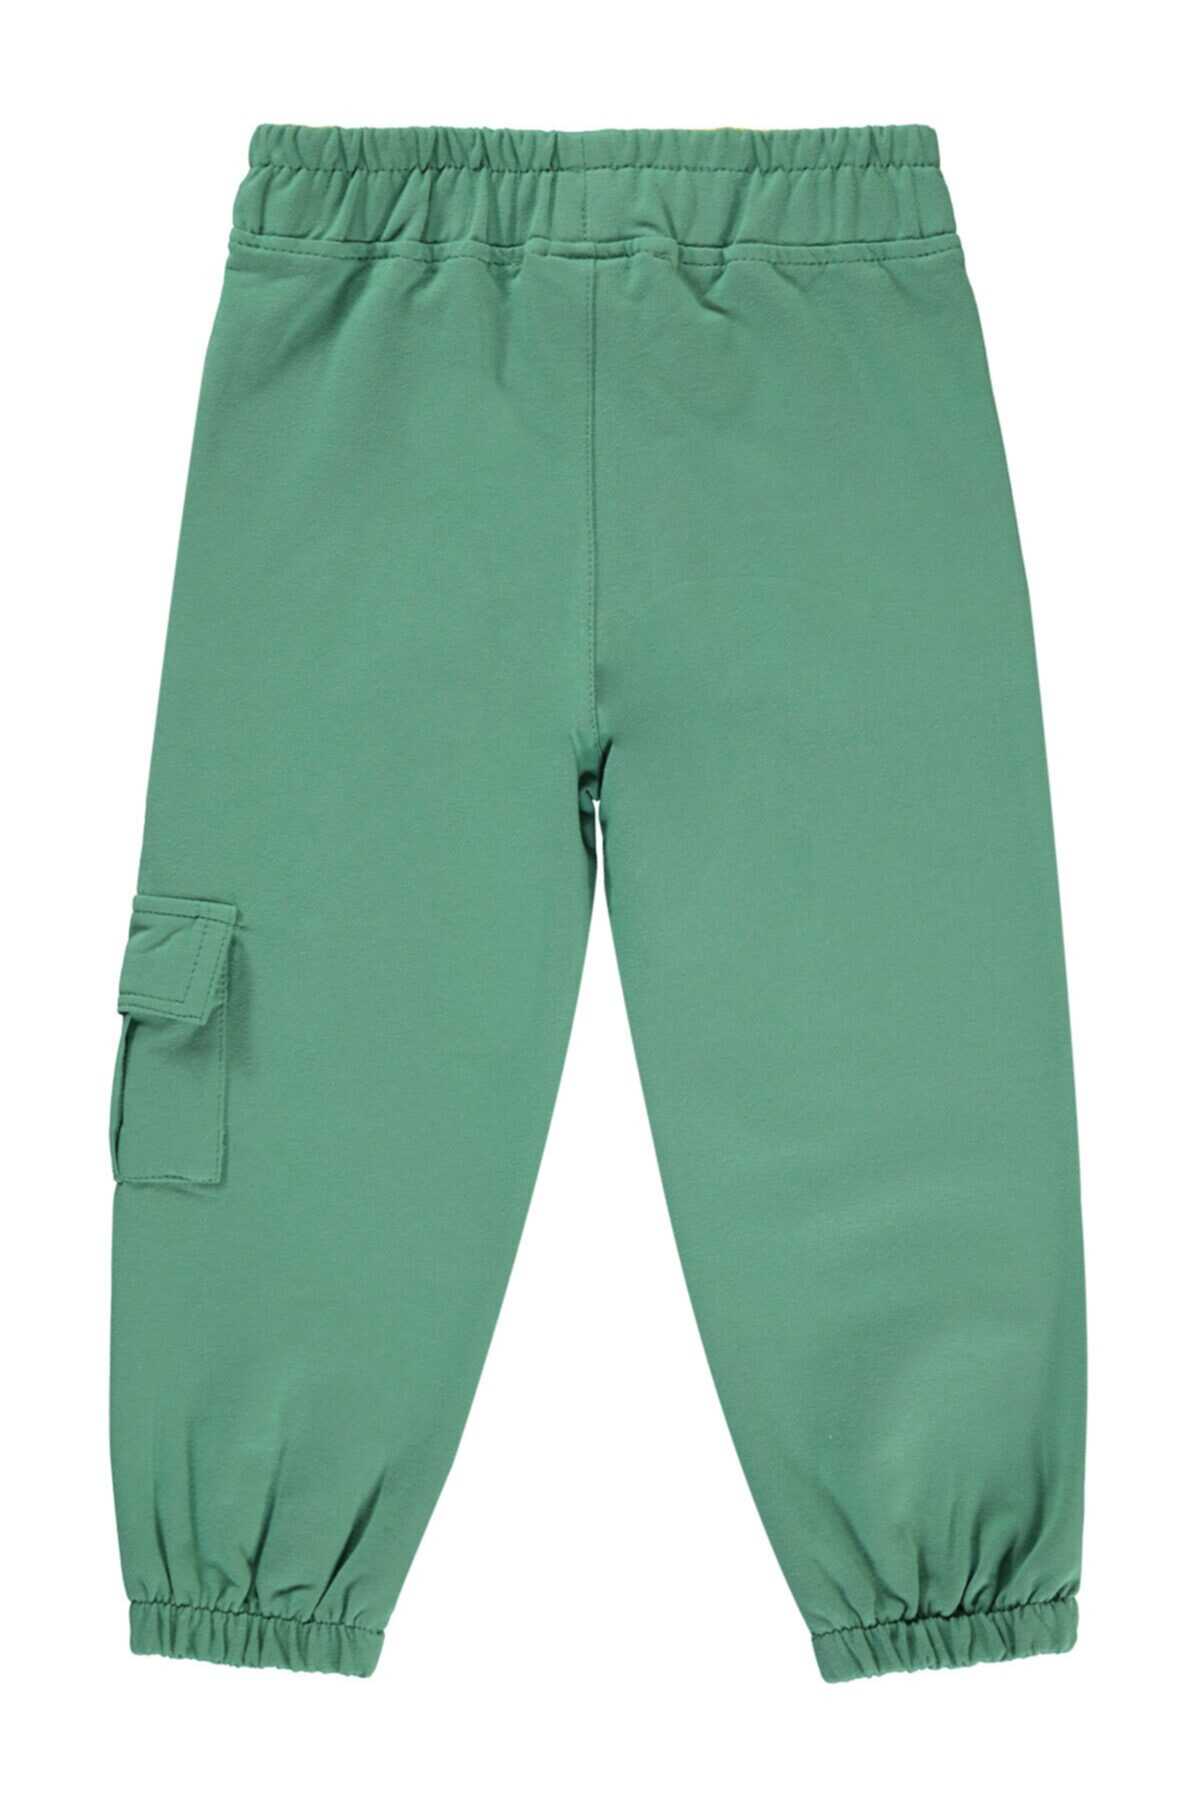 شلوار راحتی پسرانه دمپا گت جیب دار 2-5 ساله سبز برند Civil Boys